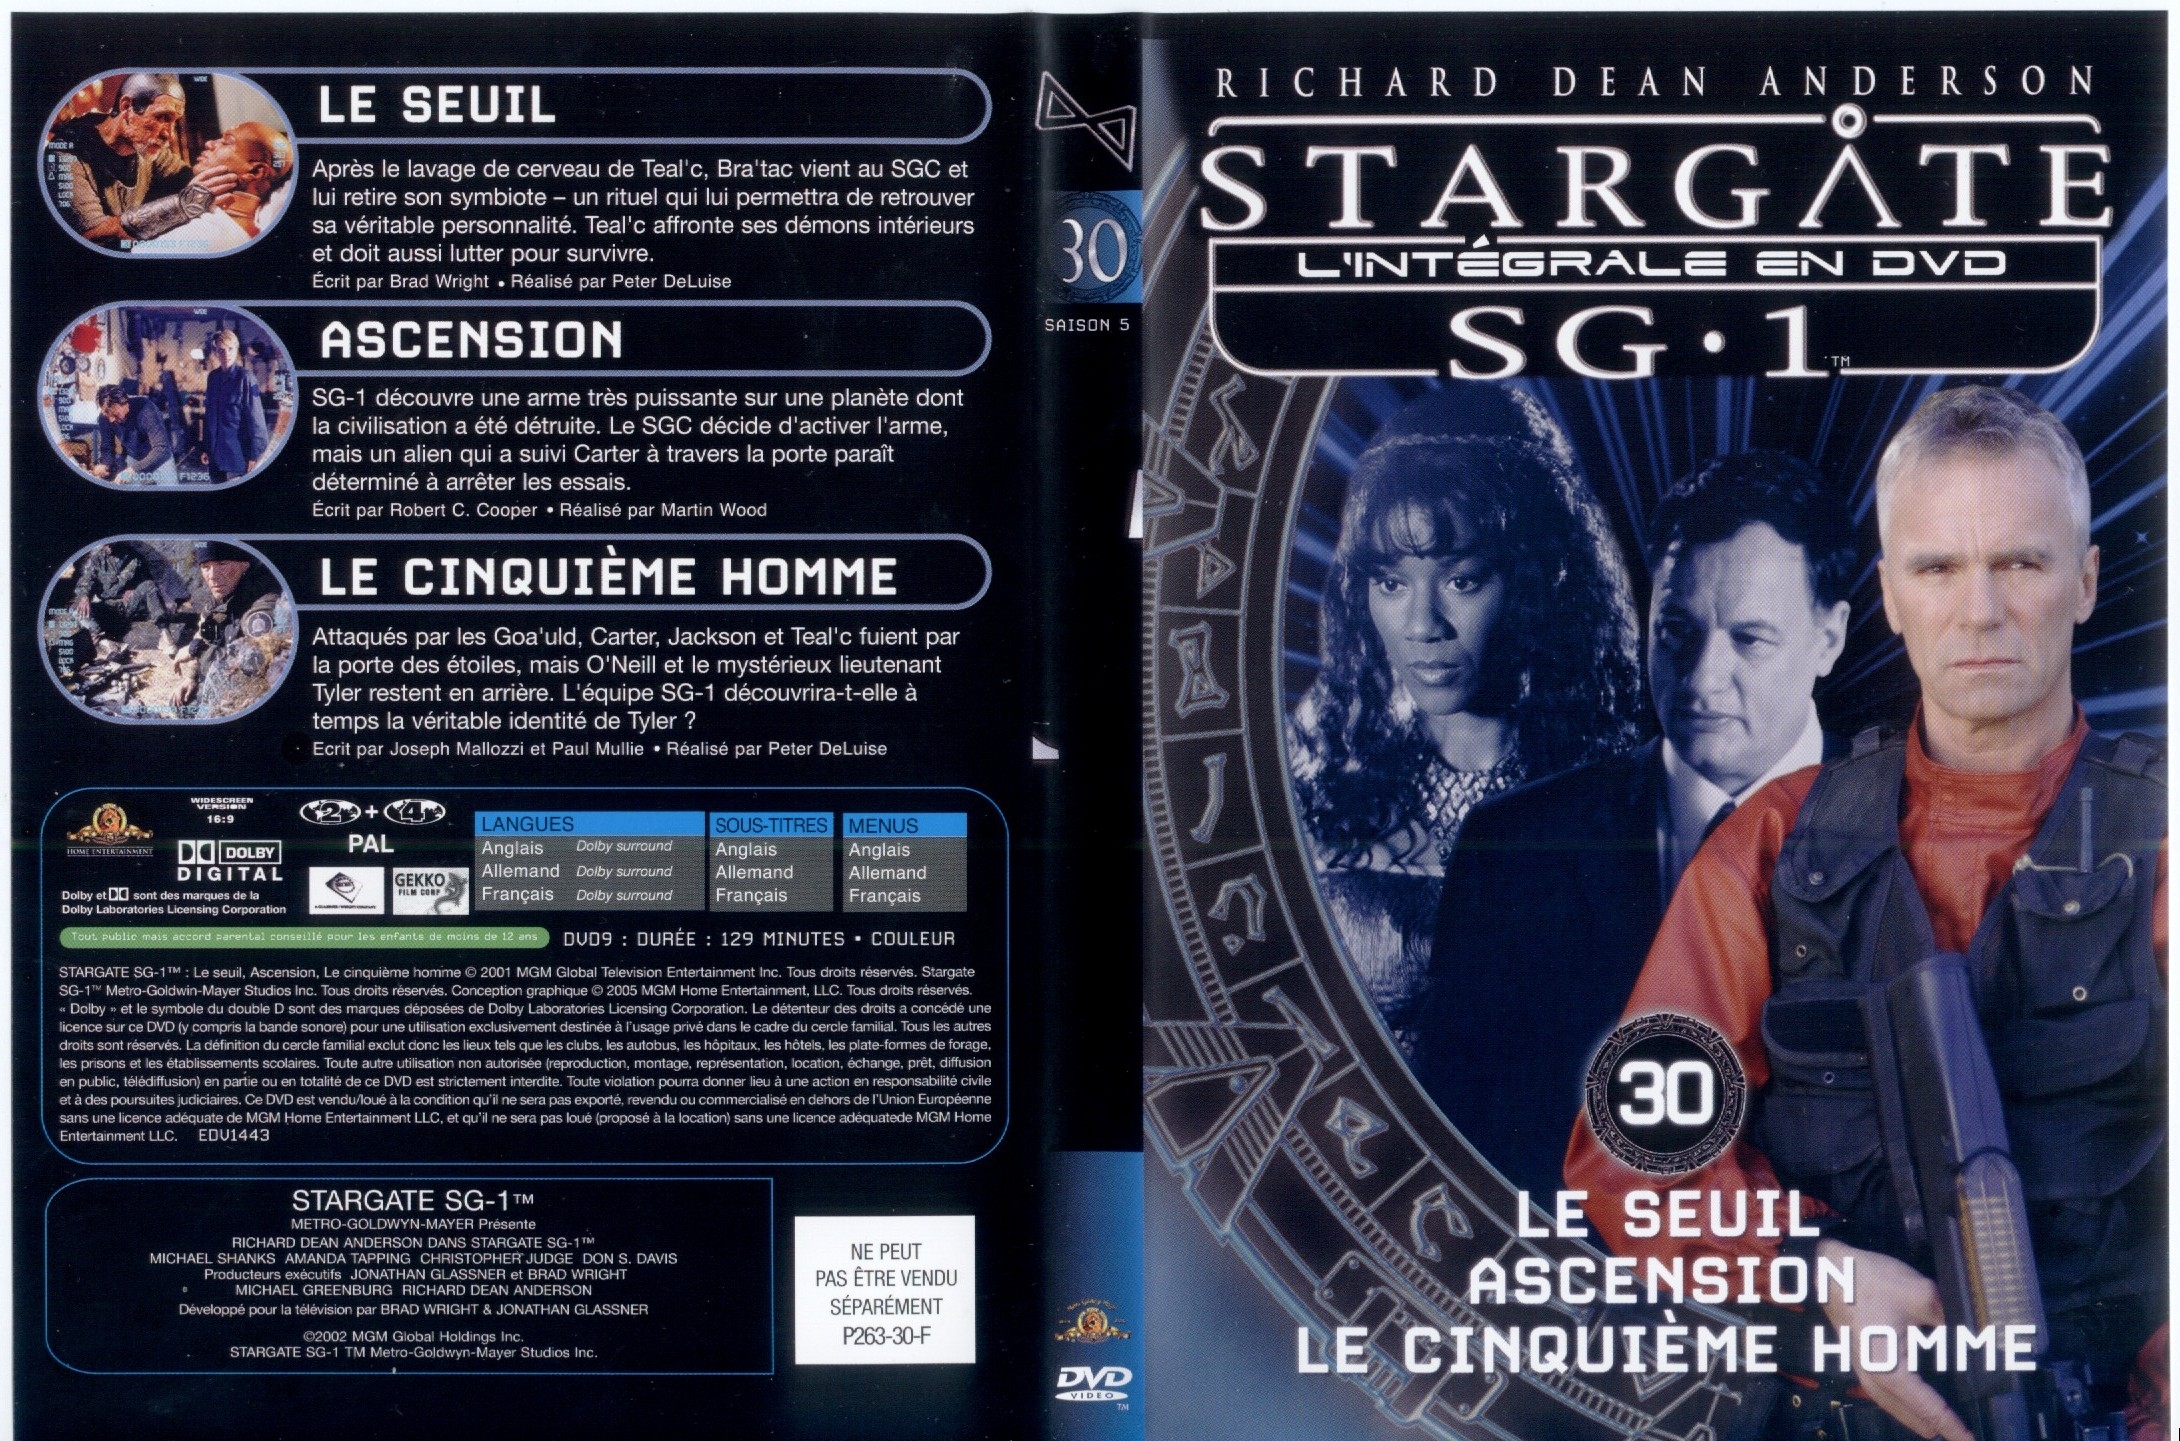 Jaquette DVD Stargate saison 5 vol 30